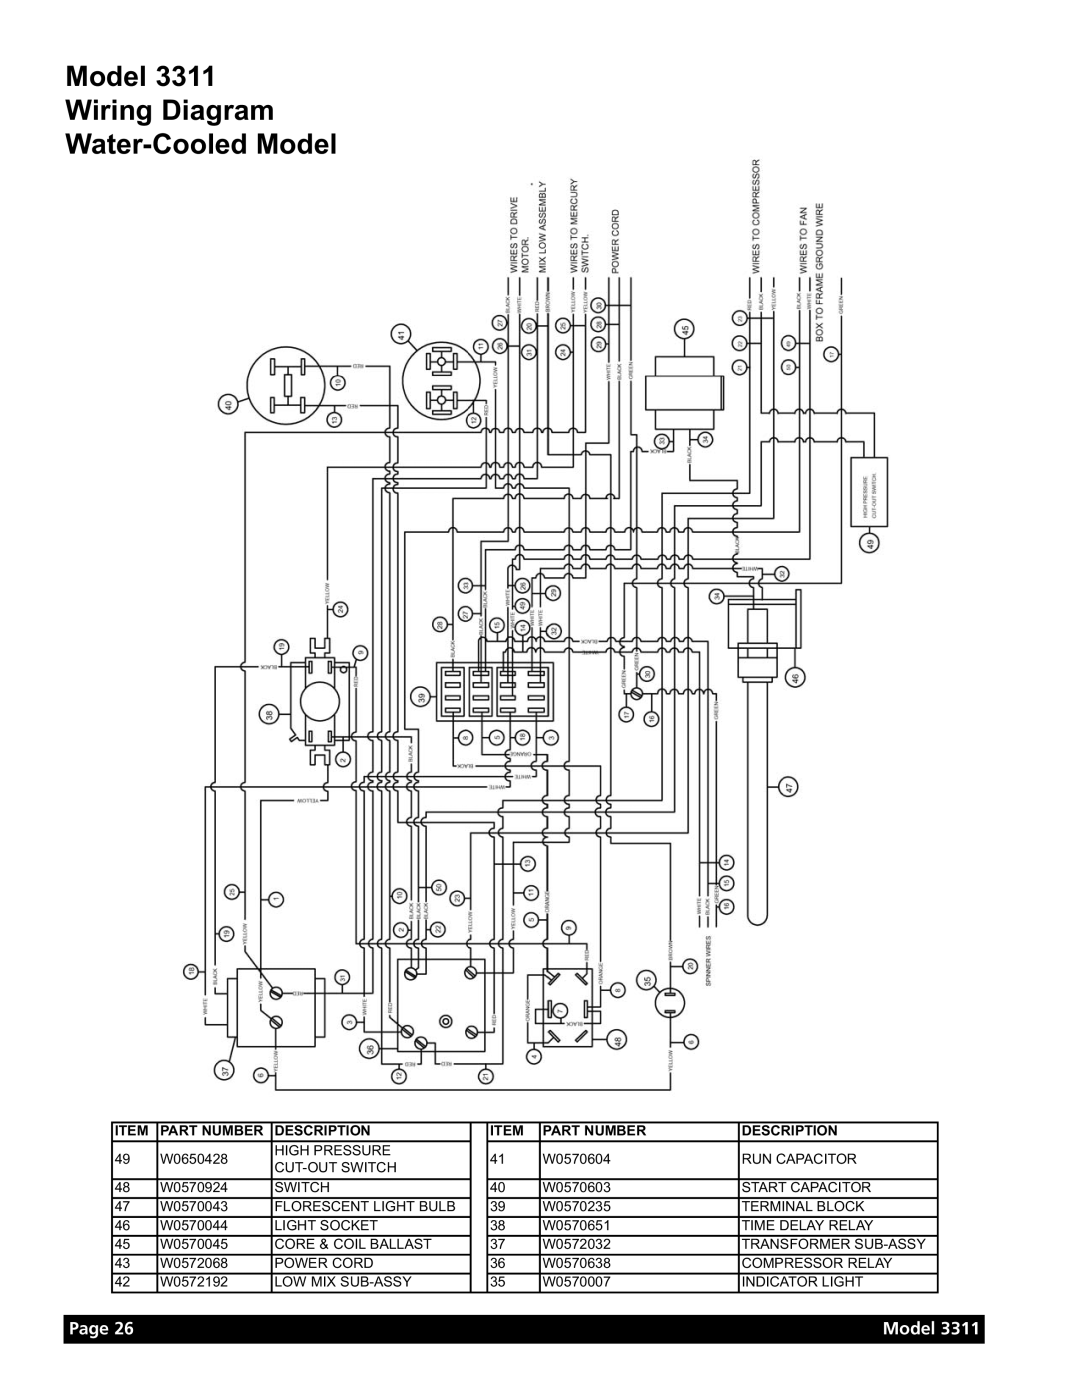 Grindmaster Model 3311 manual Model Wiring Diagram Water-Cooled Model, Page, Part Number, Description 